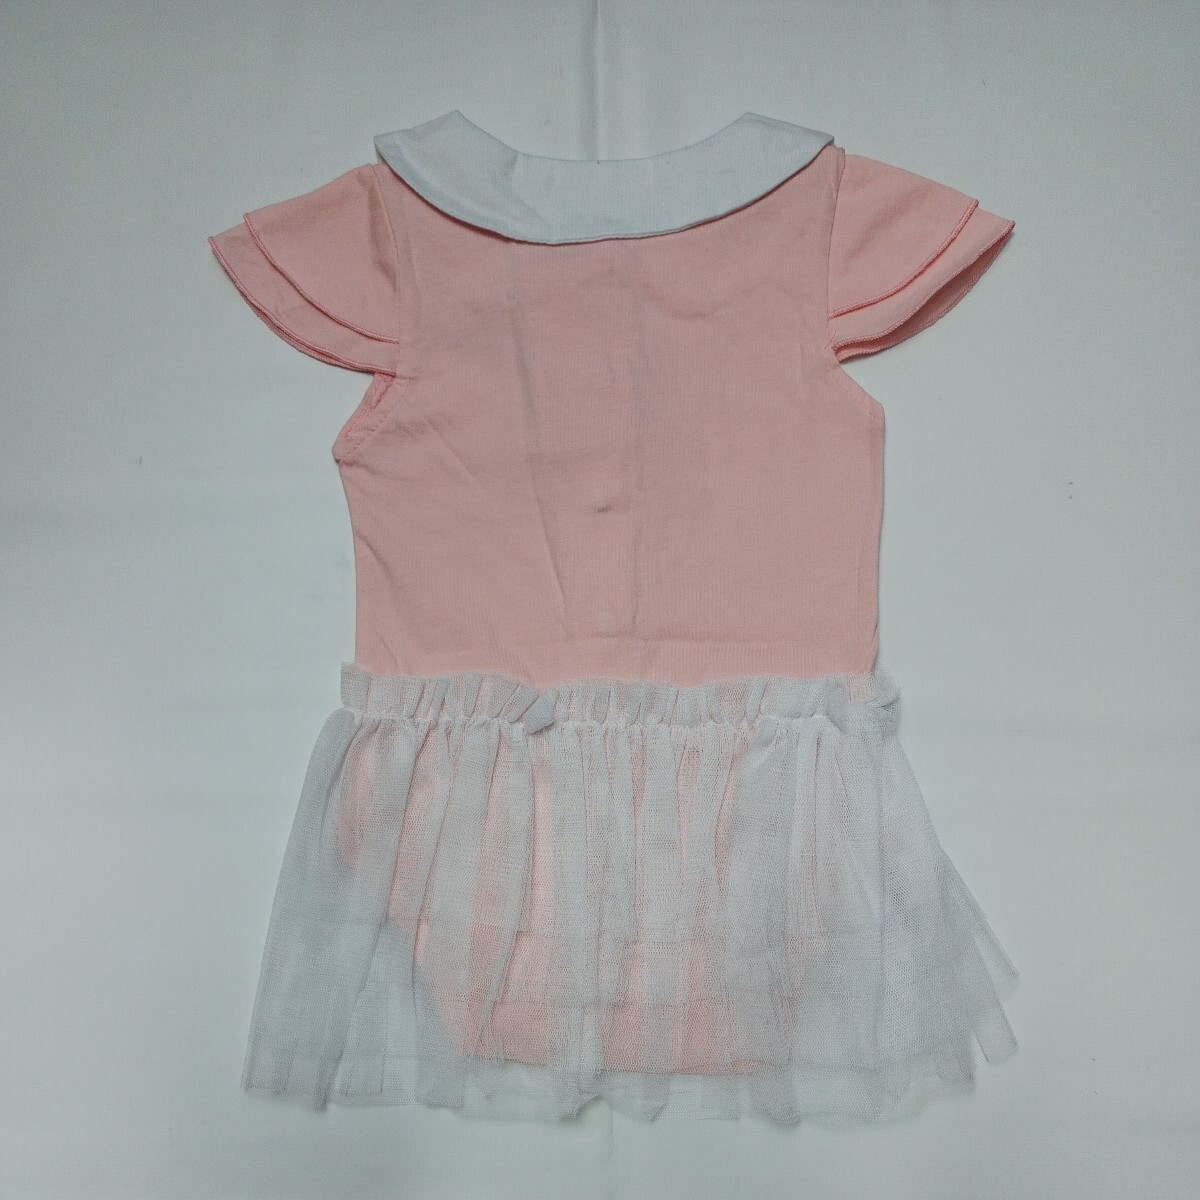 [90 размер ][ не использовался ] baby младенец девочка 90 детский комбинезон платье короткий рукав юбка способ оборка one отметка .. Crown ①